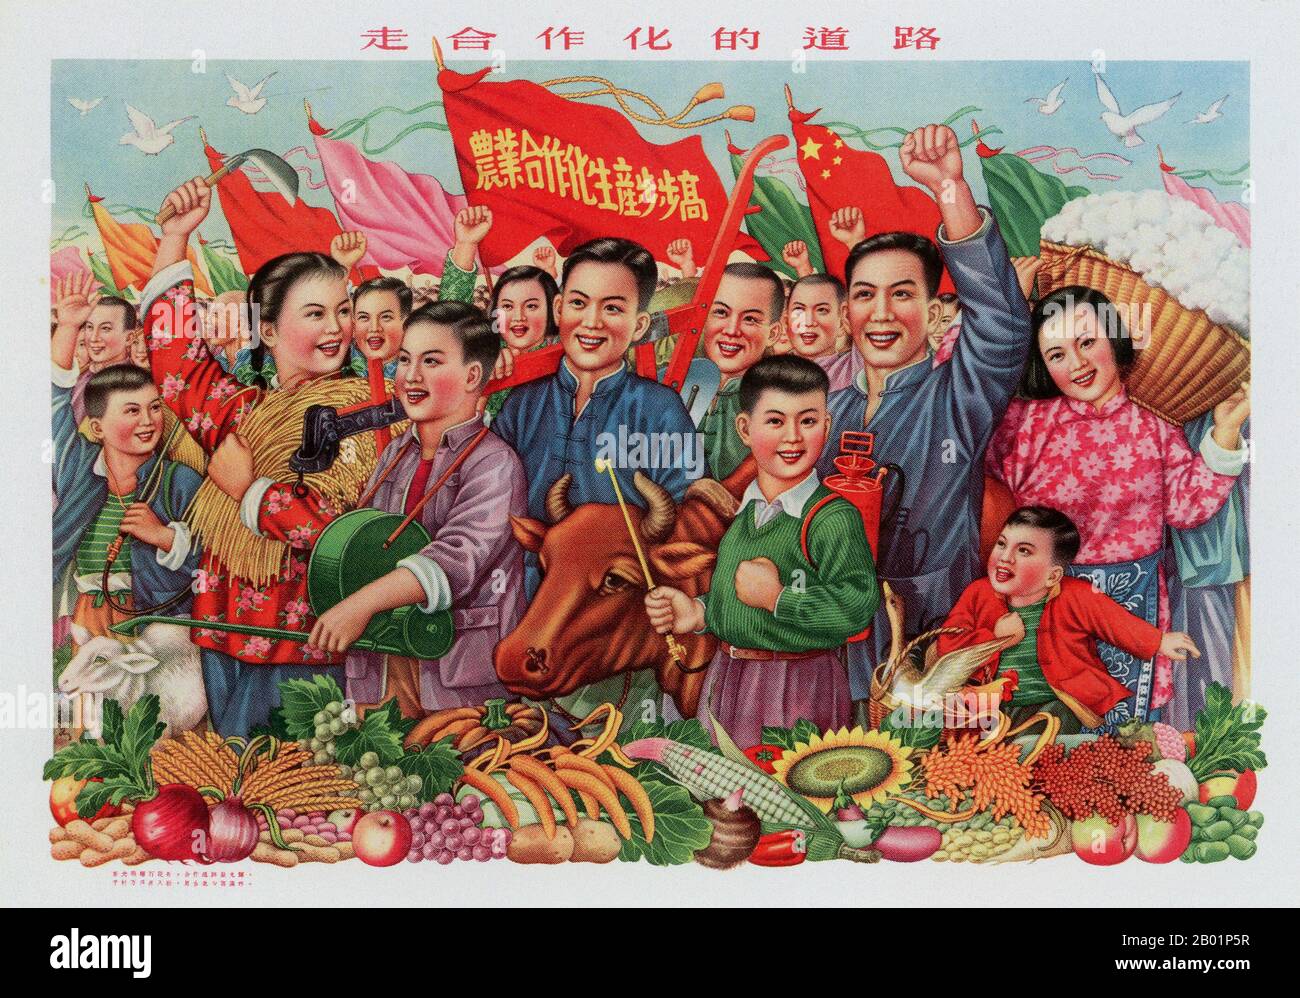 China: "Erreichen Sie jedes Jahr eine große Ernte, nehmen Sie den Weg zur Zusammenarbeit". Propagandaplakat aus der Zeit des großen Sprünges nach vorne (1958-1961), 1964. Der große Sprung nach vorne in der Volksrepublik China (VR China) war eine wirtschaftliche und soziale Kampagne der Kommunistischen Partei Chinas (KPC), die sich in Planungsentscheidungen von 1958 bis 1961 widerspiegelte. die darauf abzielte, Chinas riesige Bevölkerung zu nutzen, um das Land durch den Prozess der raschen Industrialisierung und Kollektivierung rasch von einer Agrarwirtschaft in eine moderne kommunistische Gesellschaft zu verwandeln. Stockfoto